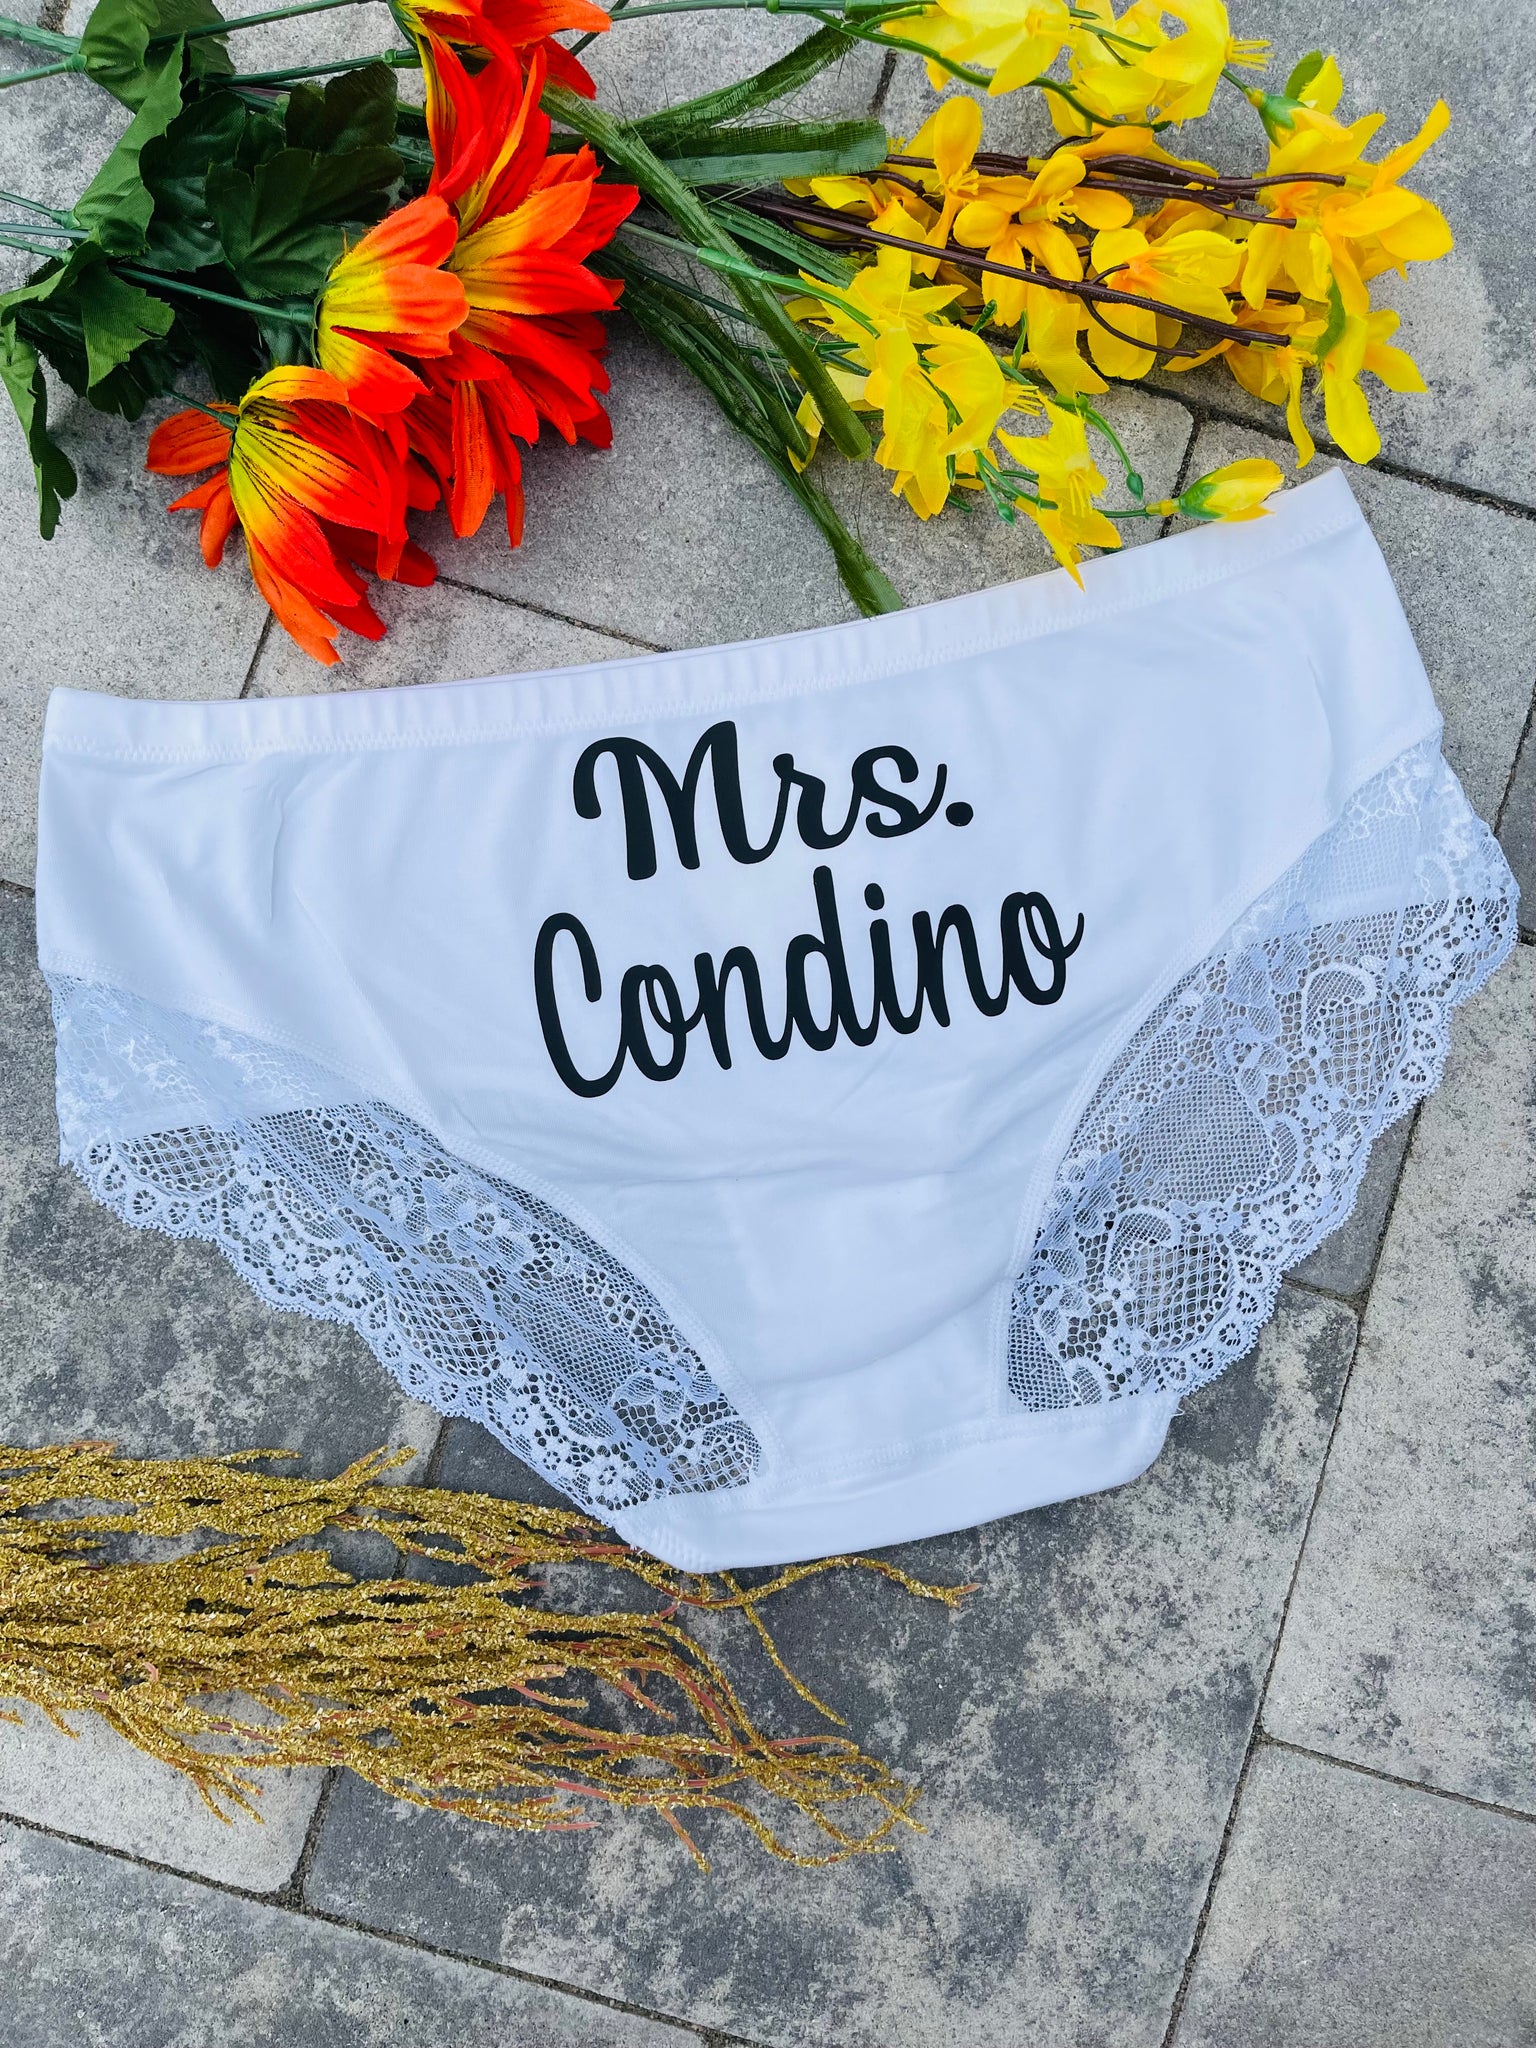 The Bride Custom Panties - Custom Underwear – Super Socks